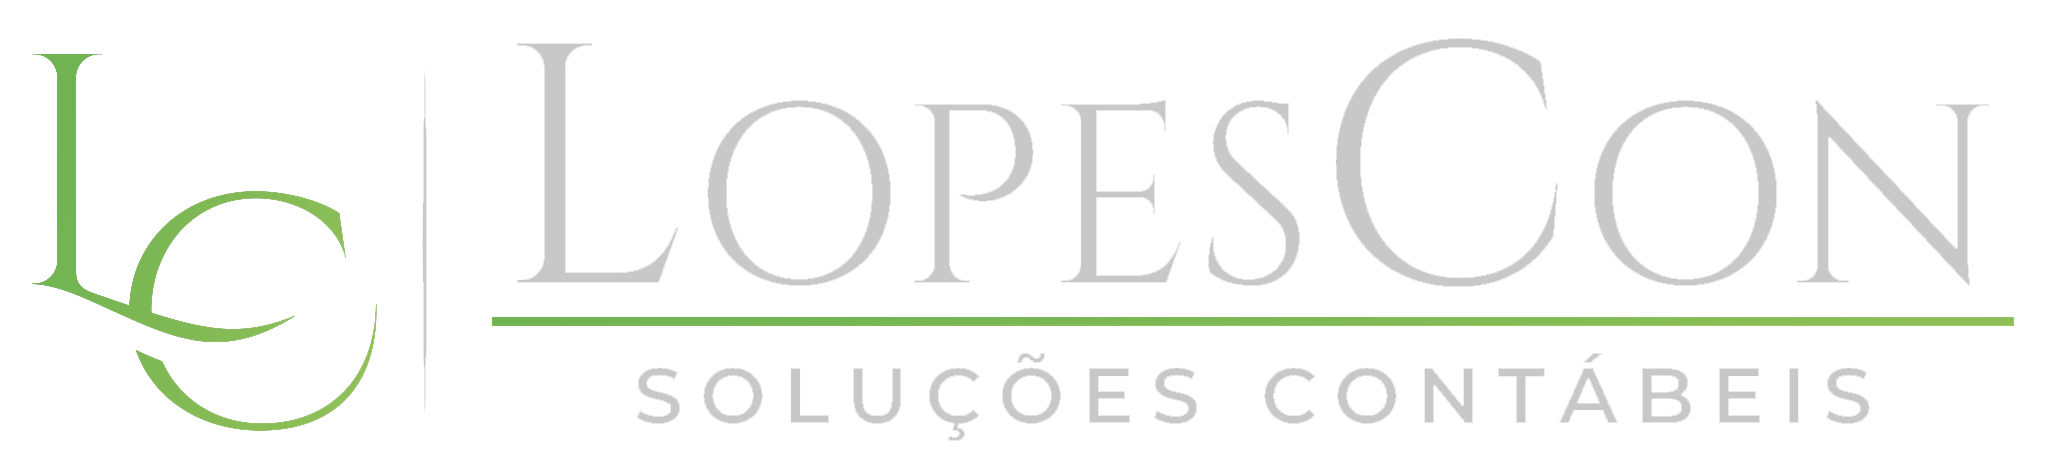 Lopescon Logo White Green - LopesCon Soluções Contábeis